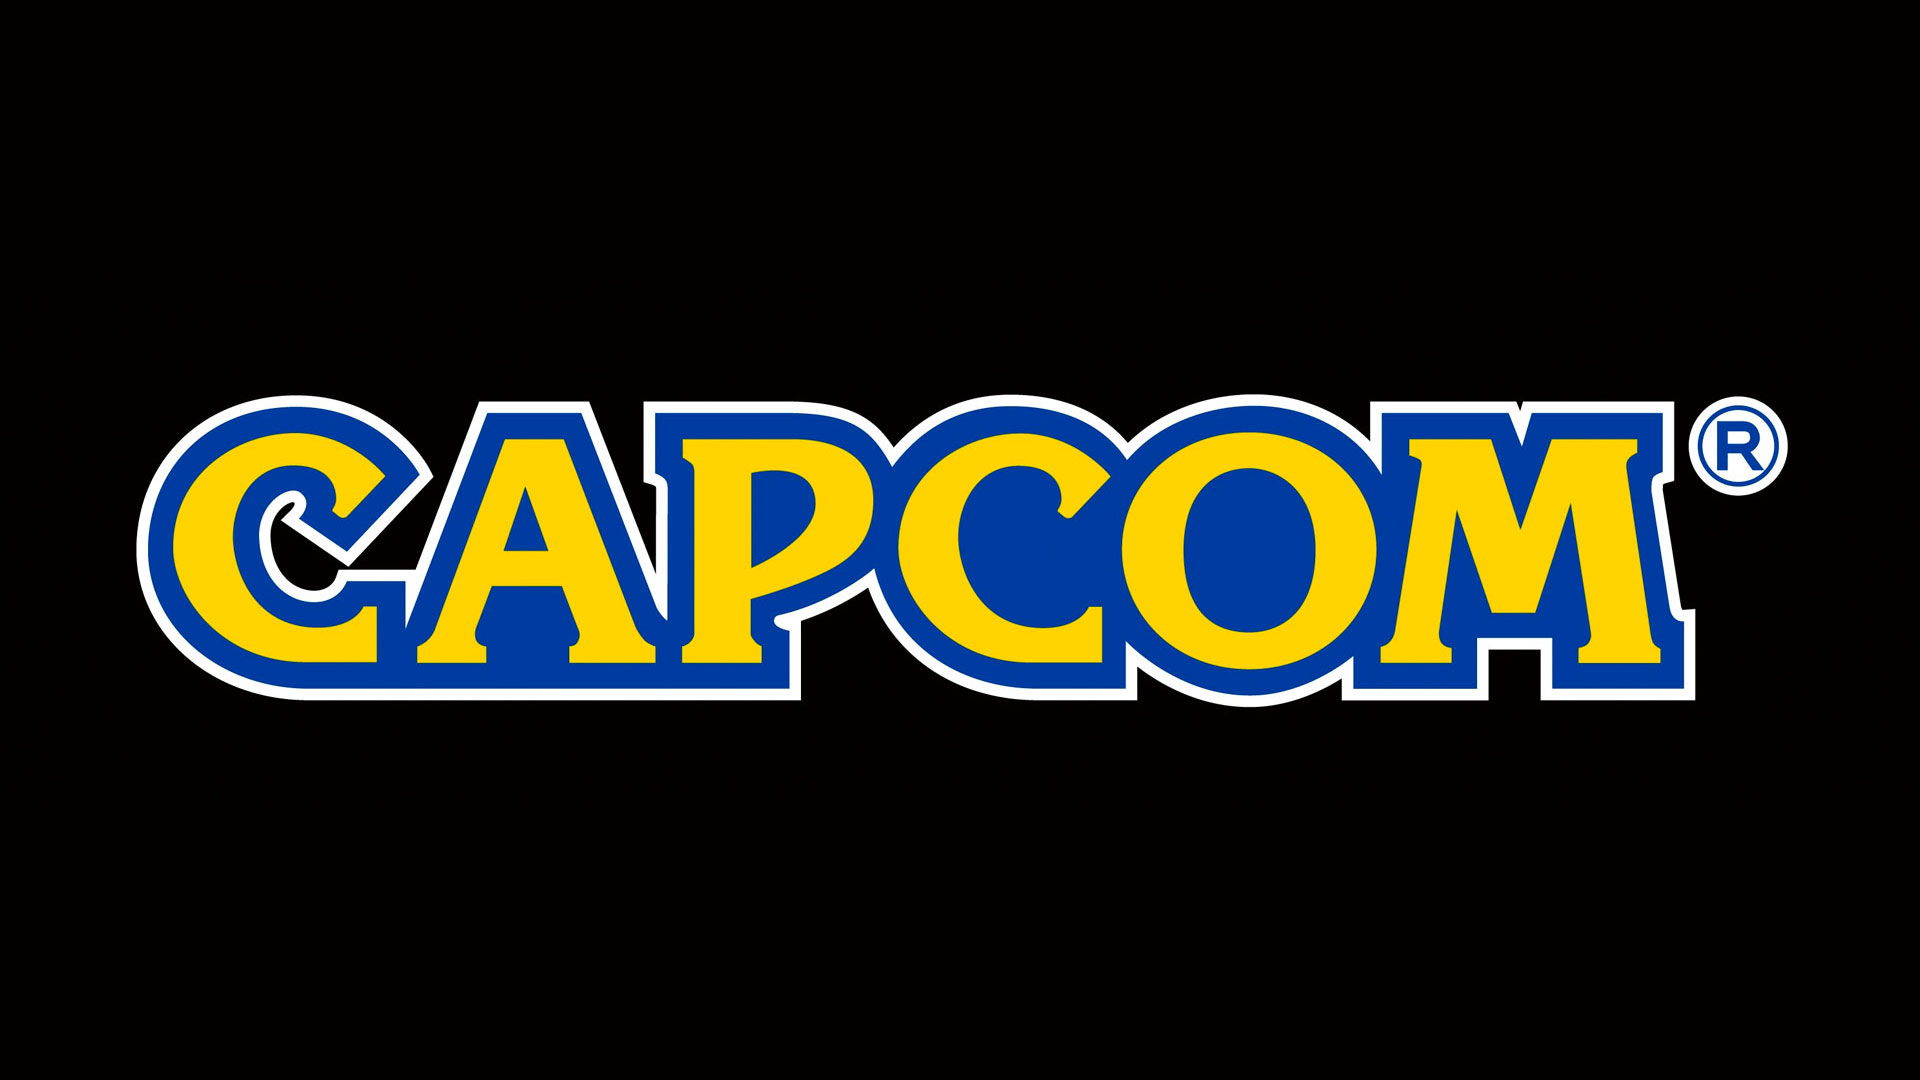 พนักงาน Capcom มีเฮ! บริษัทประกาศเพิ่มฐานเงินเดือนให้ถึง 30%